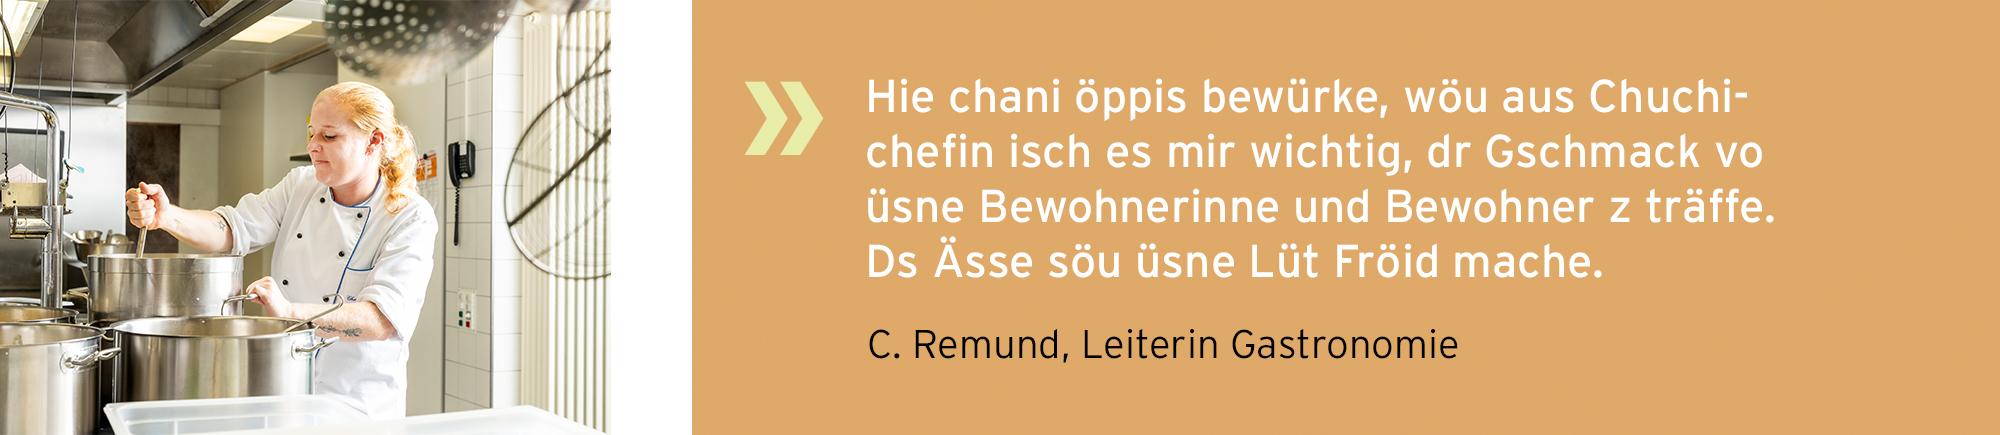 alterssitz_buechibaerg_slider_statements_Pflegt_schaffe_Remund